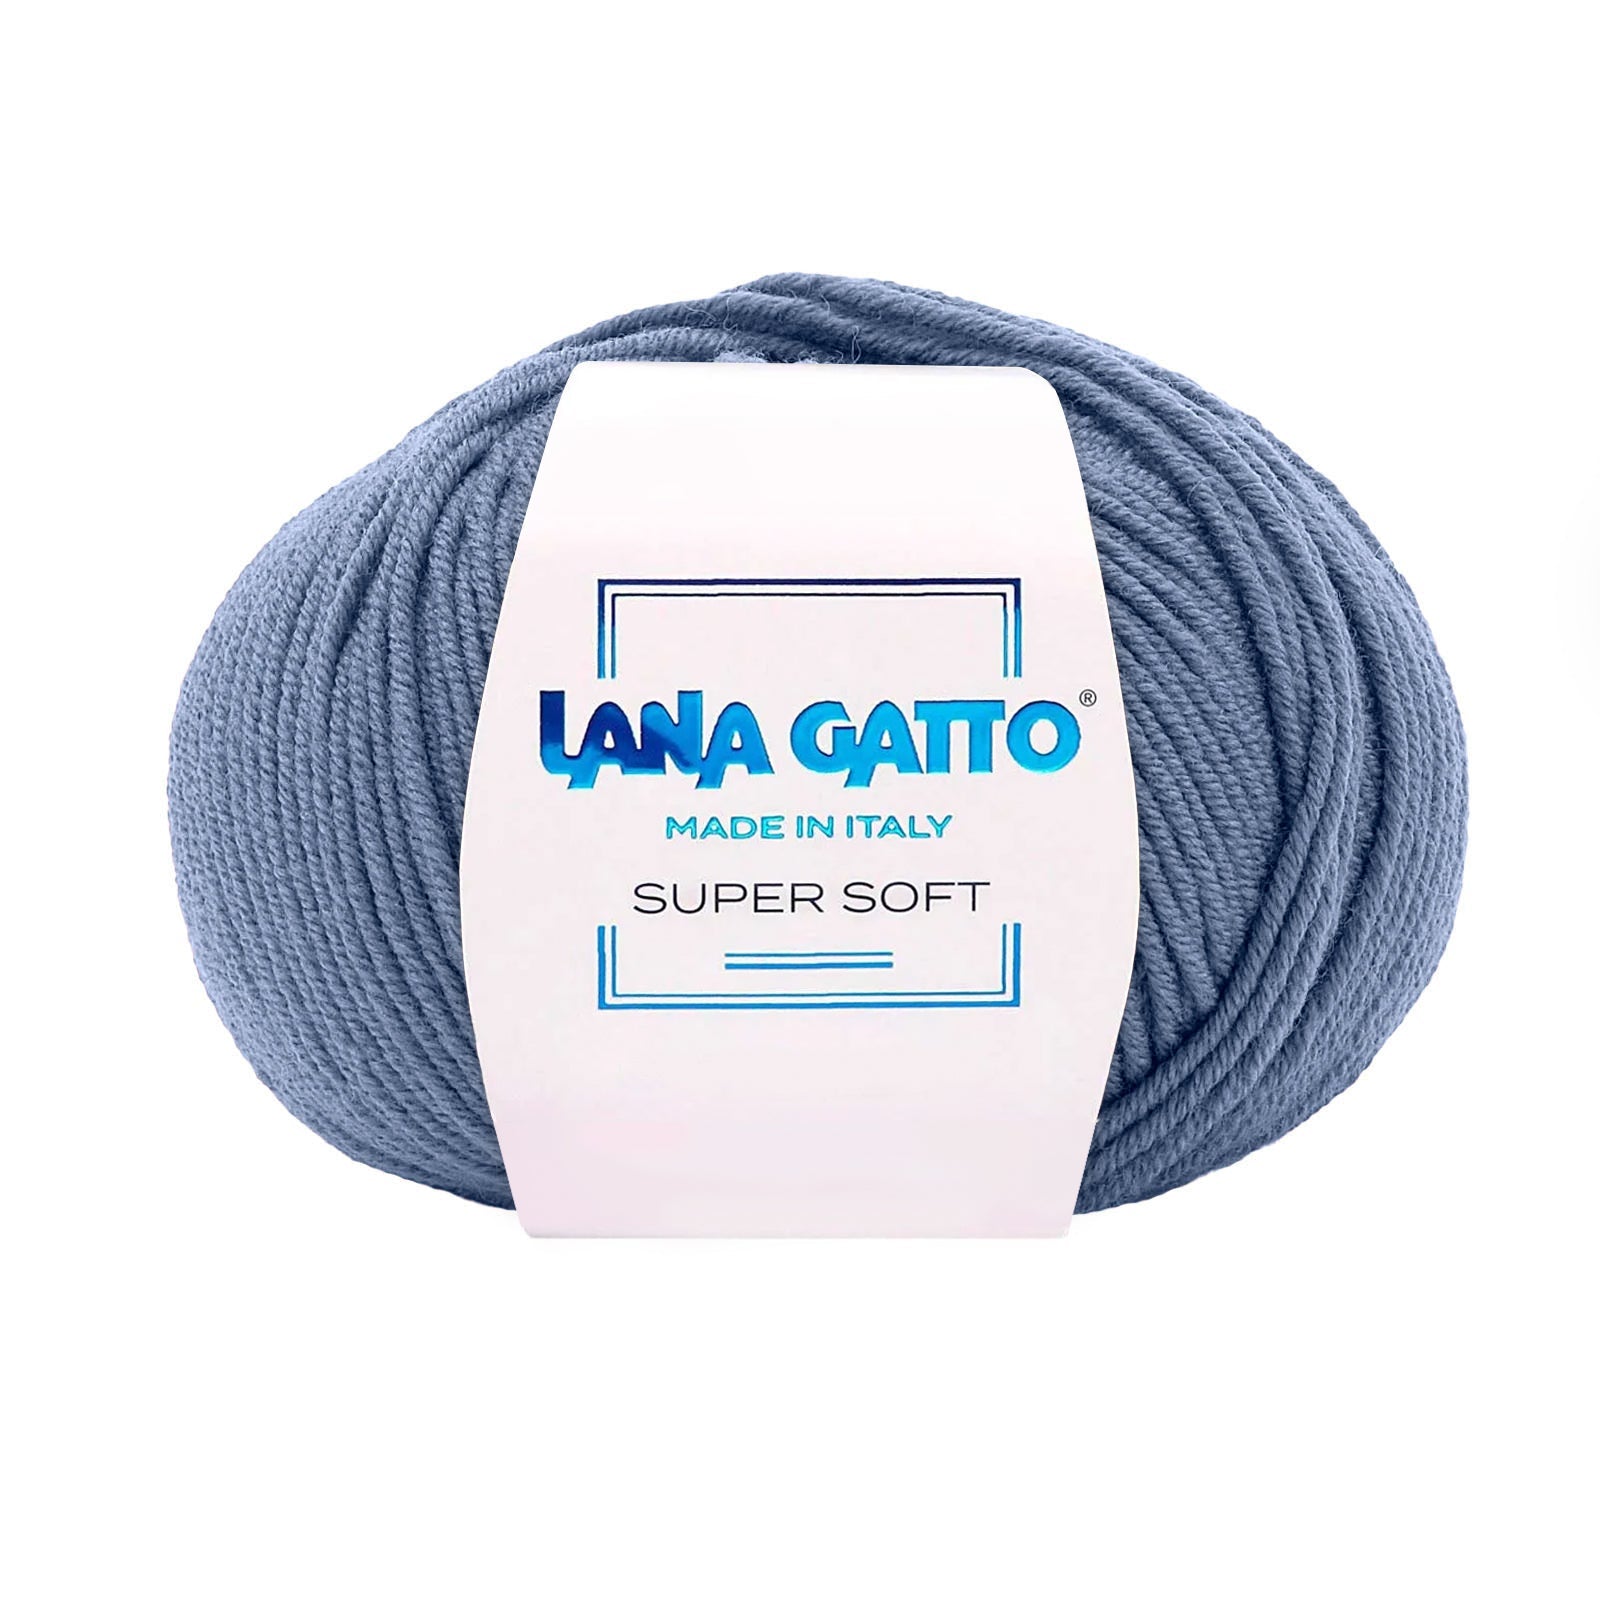 Gomitolo 100% Pura Lana Vergine Merino Extrafine Lana Gatto Linea Super Soft - Tonalità Blu - Blu - 10173 - Gomitolo